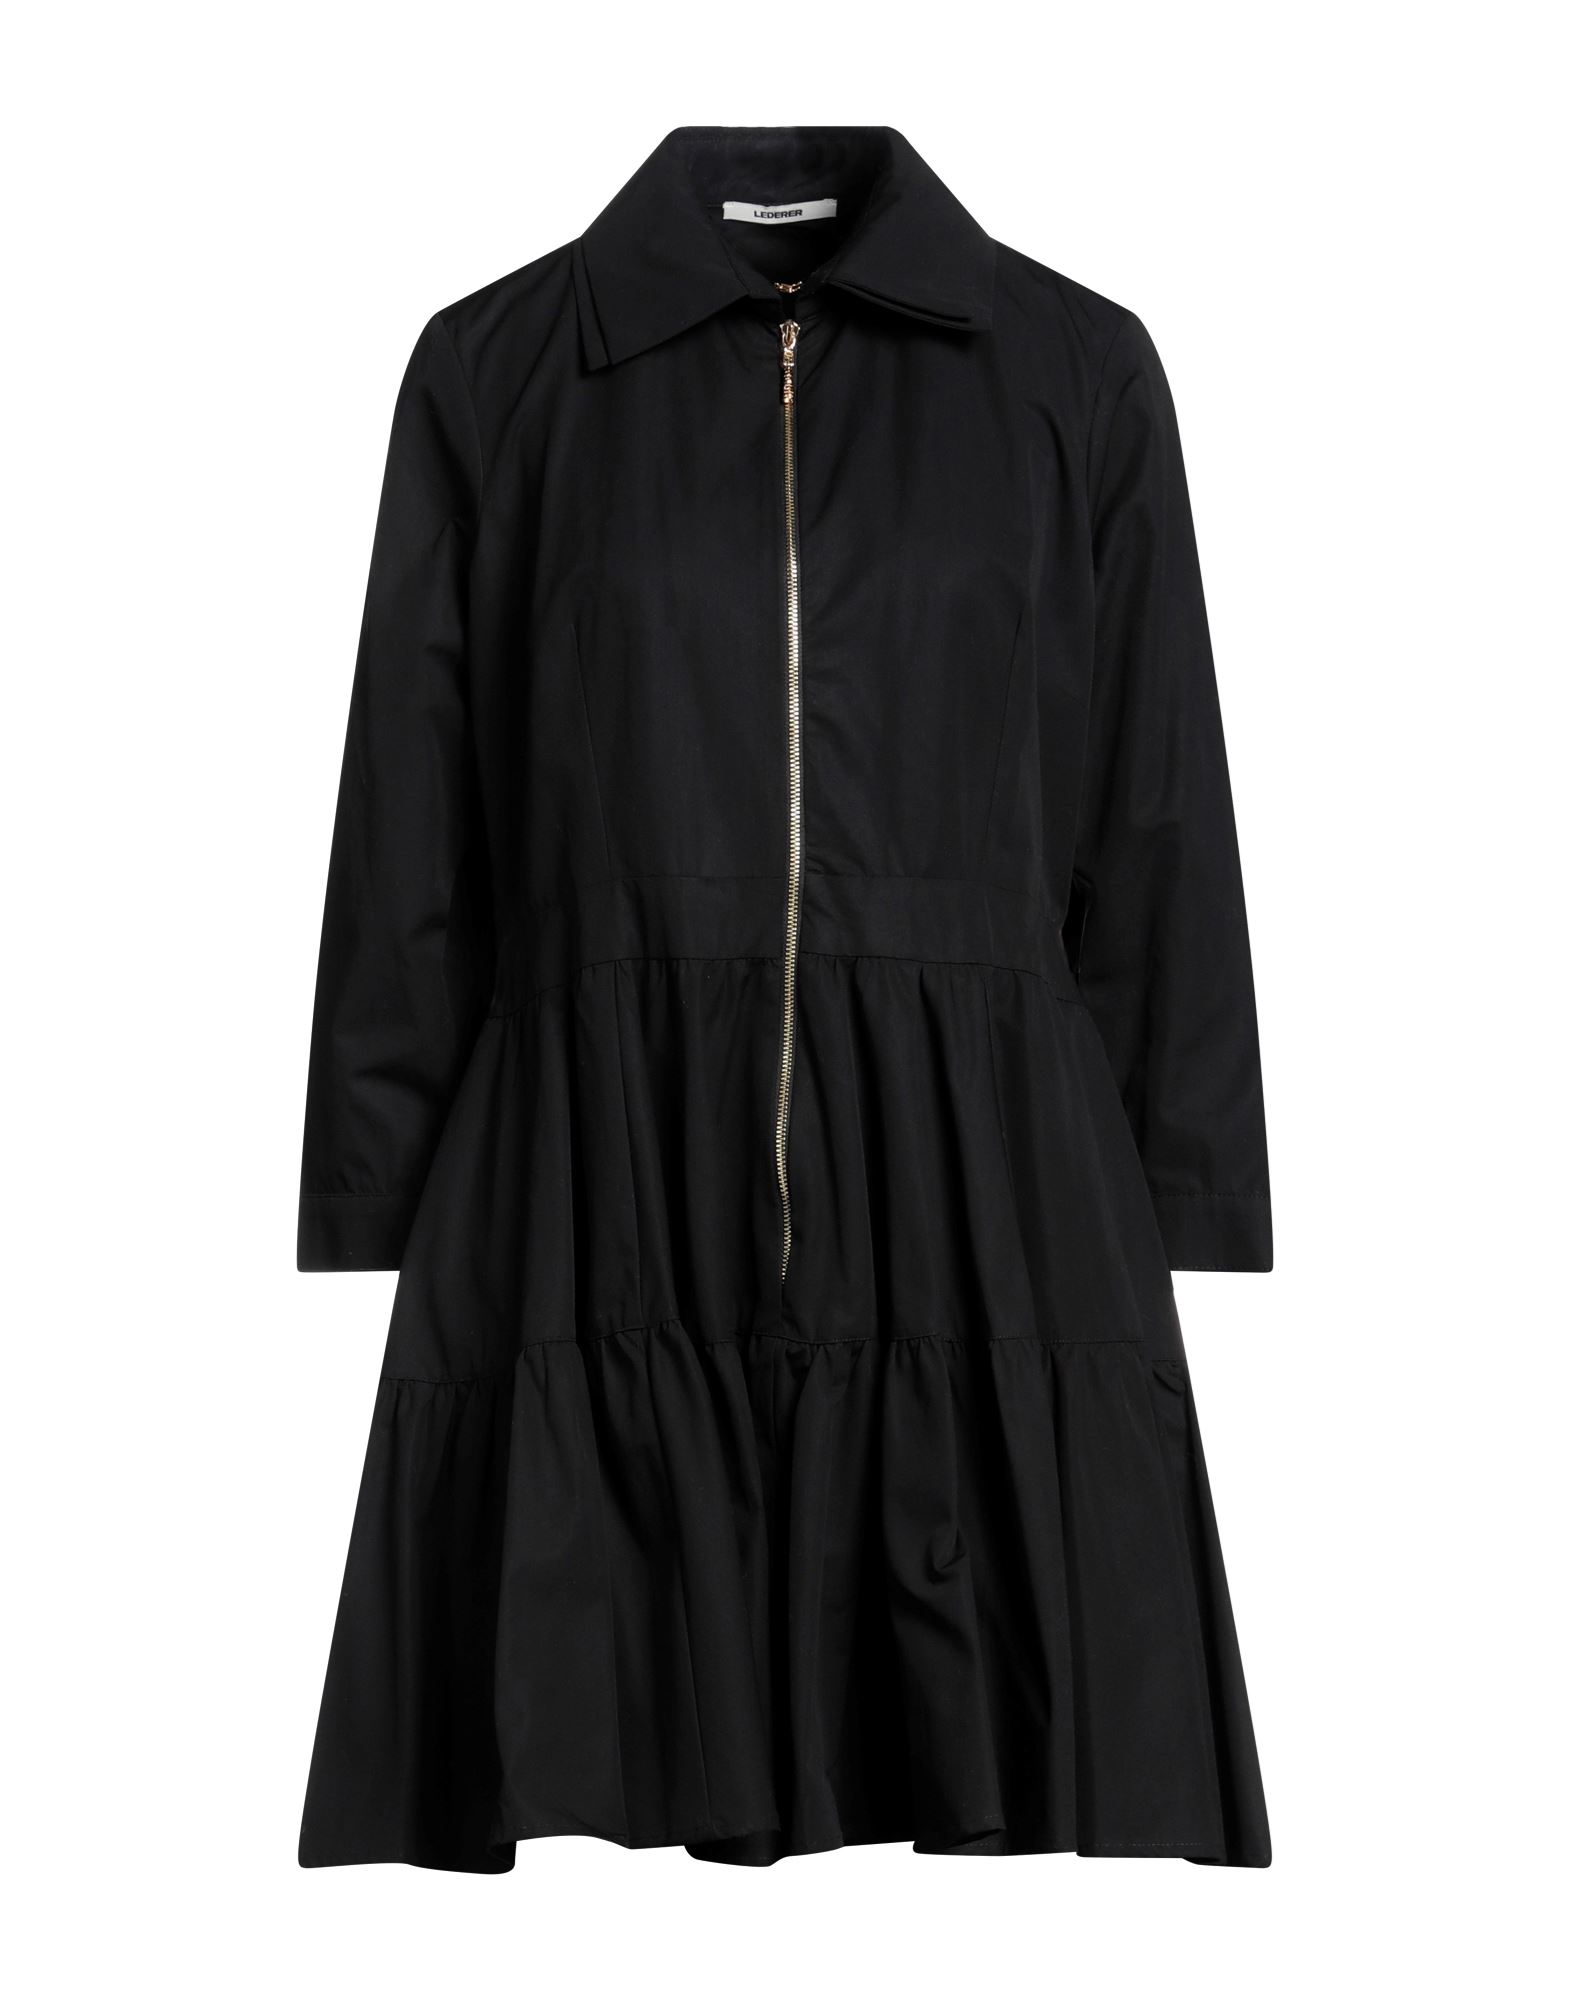 Max & Moi Lederer Woman Mini Dress Black Size 12 Cotton, Viscose